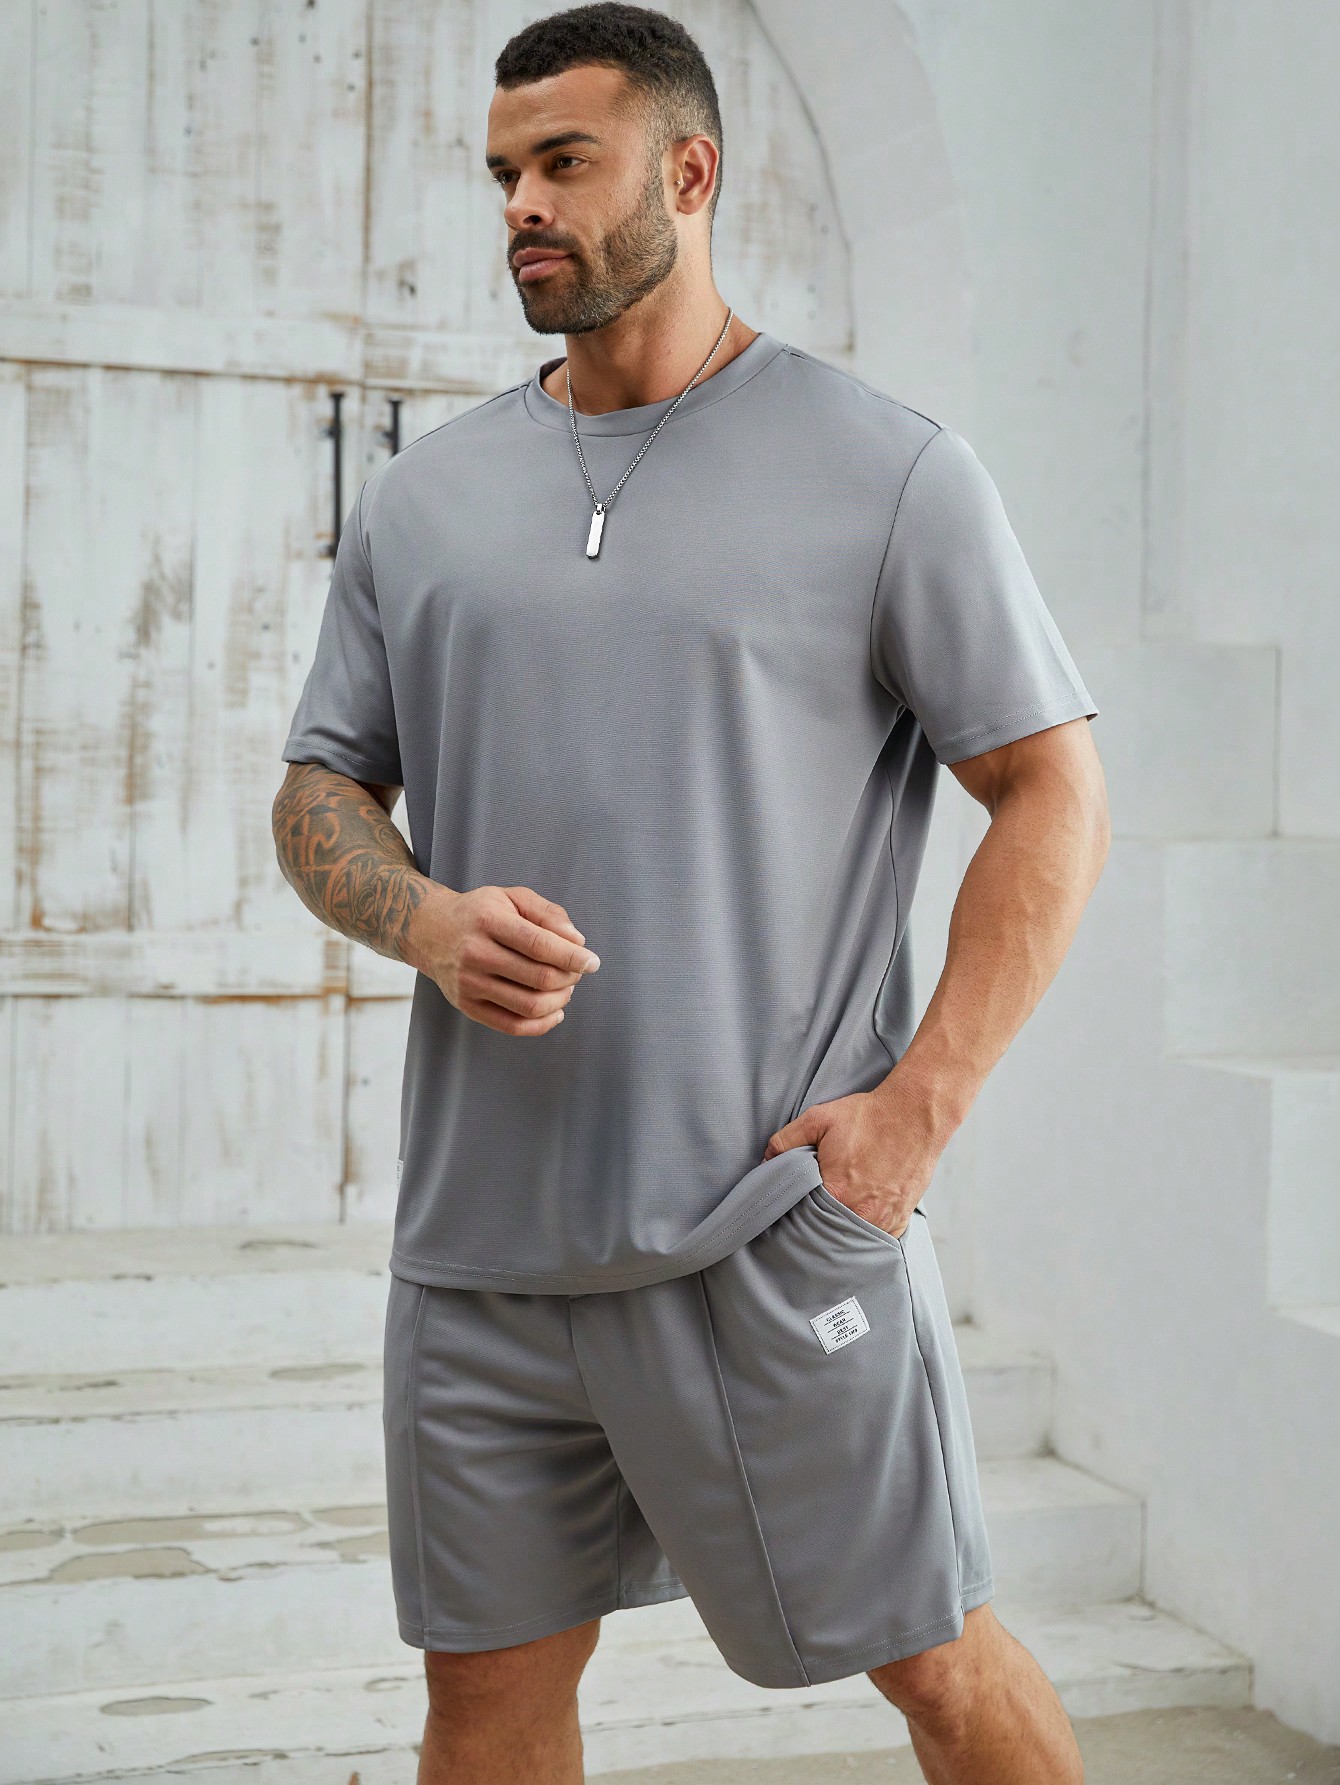 Мужская повседневная трикотажная футболка с короткими рукавами и прямые шорты Manfinity Homme, серый